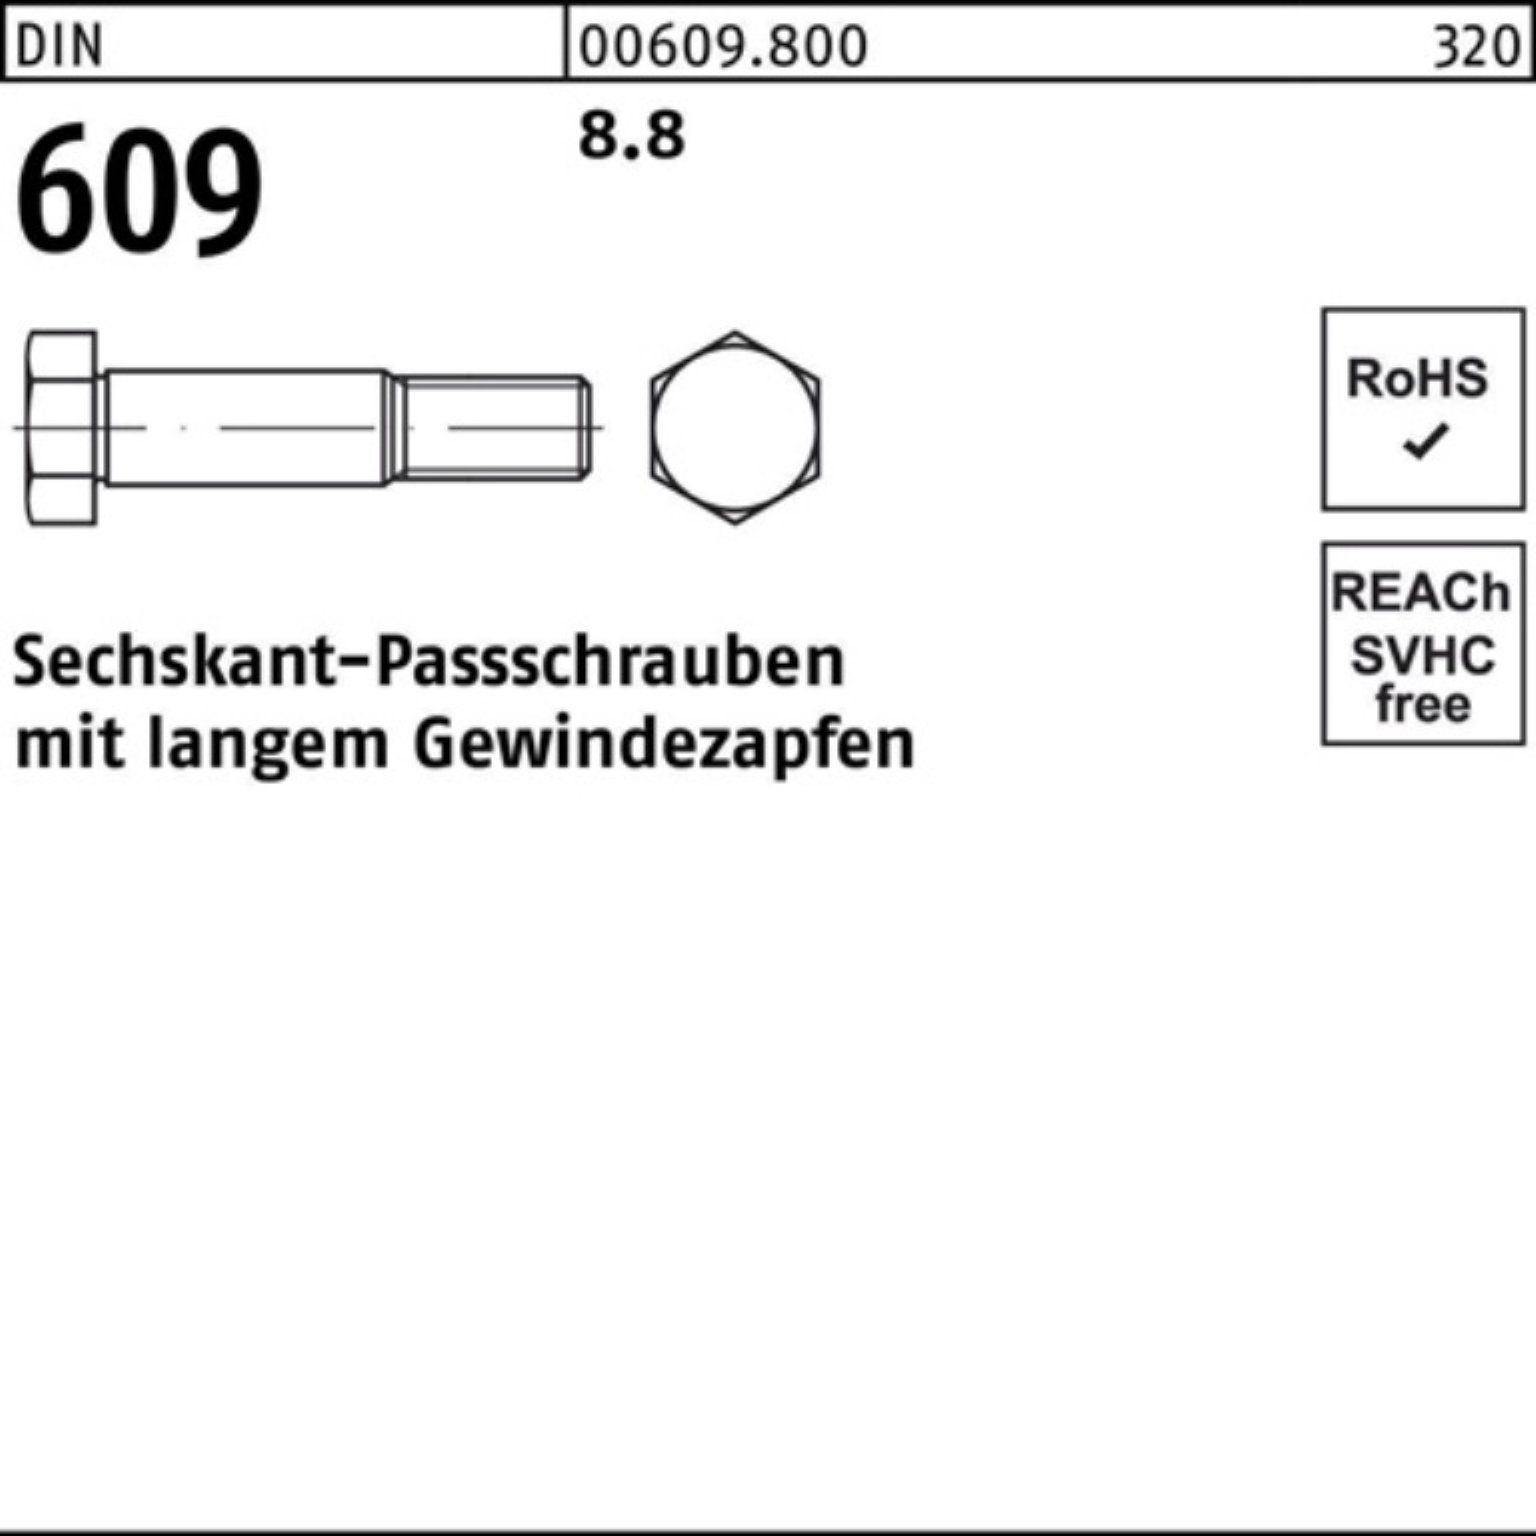 DIN Schraube 8 Pack M8x langem 100er Gewindezapfen 609 70 Reyher Sechskantpassschraube